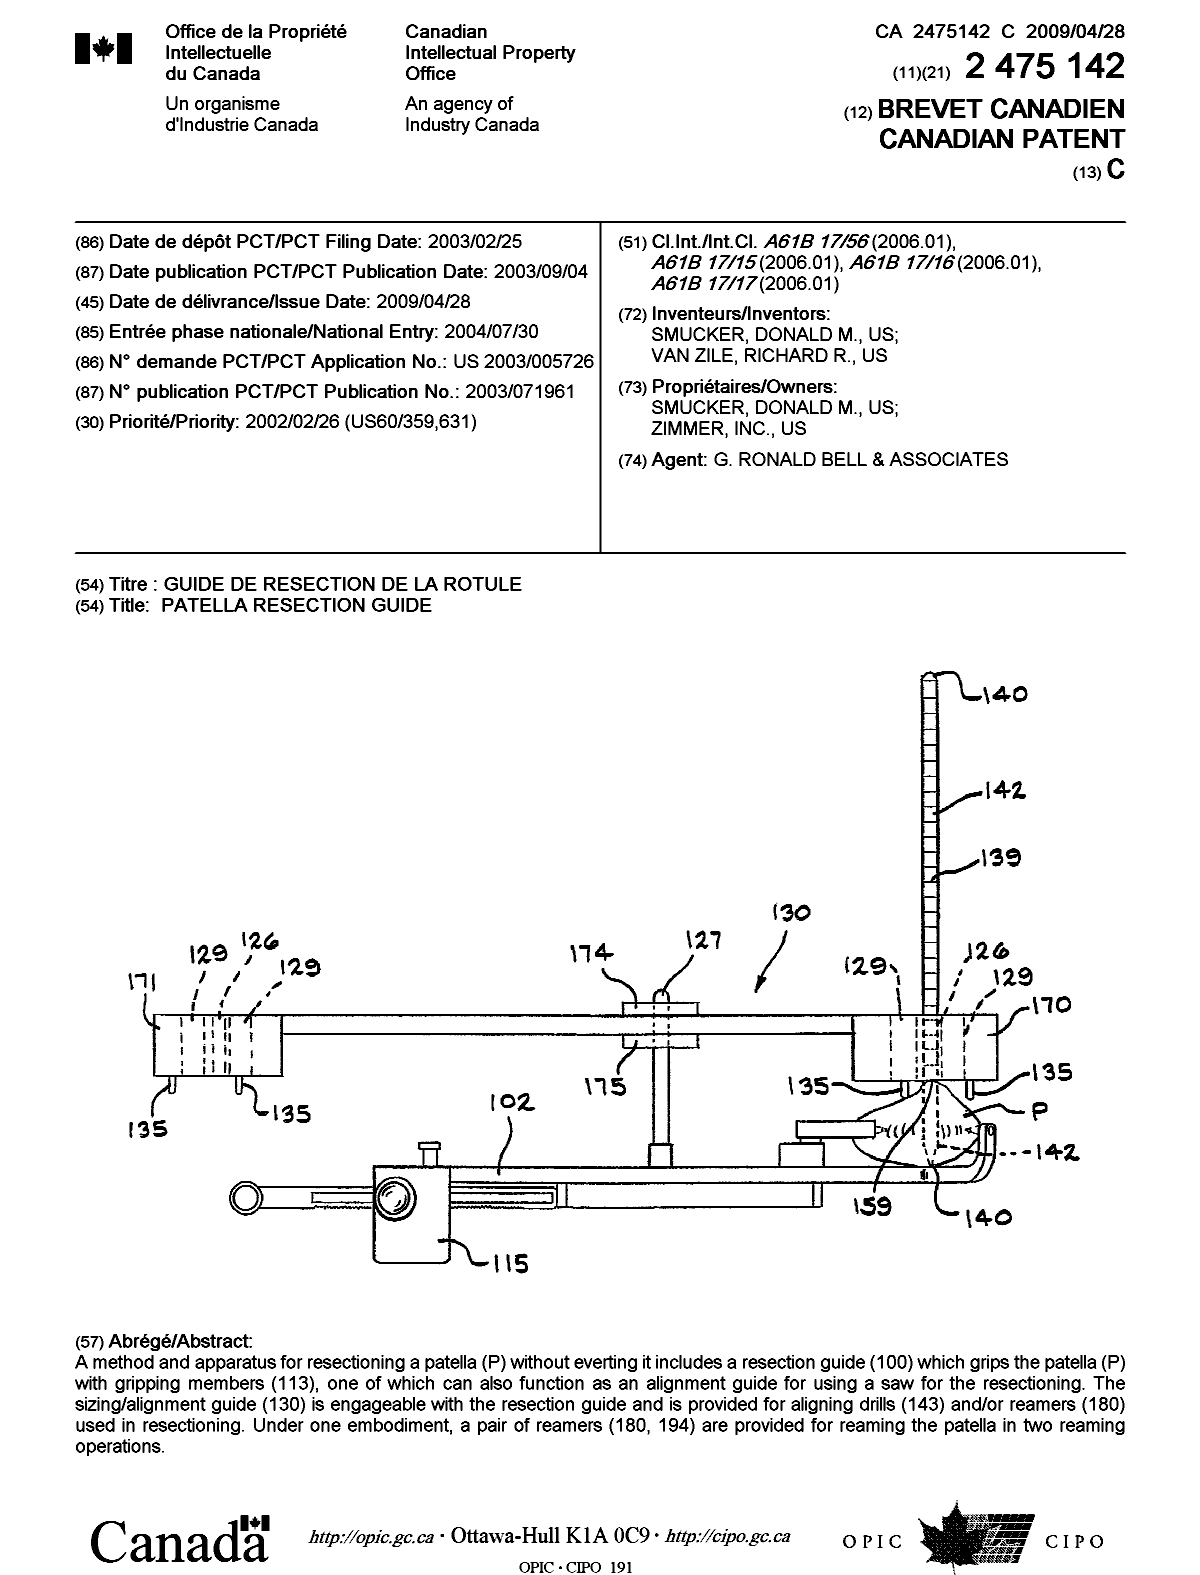 Document de brevet canadien 2475142. Page couverture 20090414. Image 1 de 1